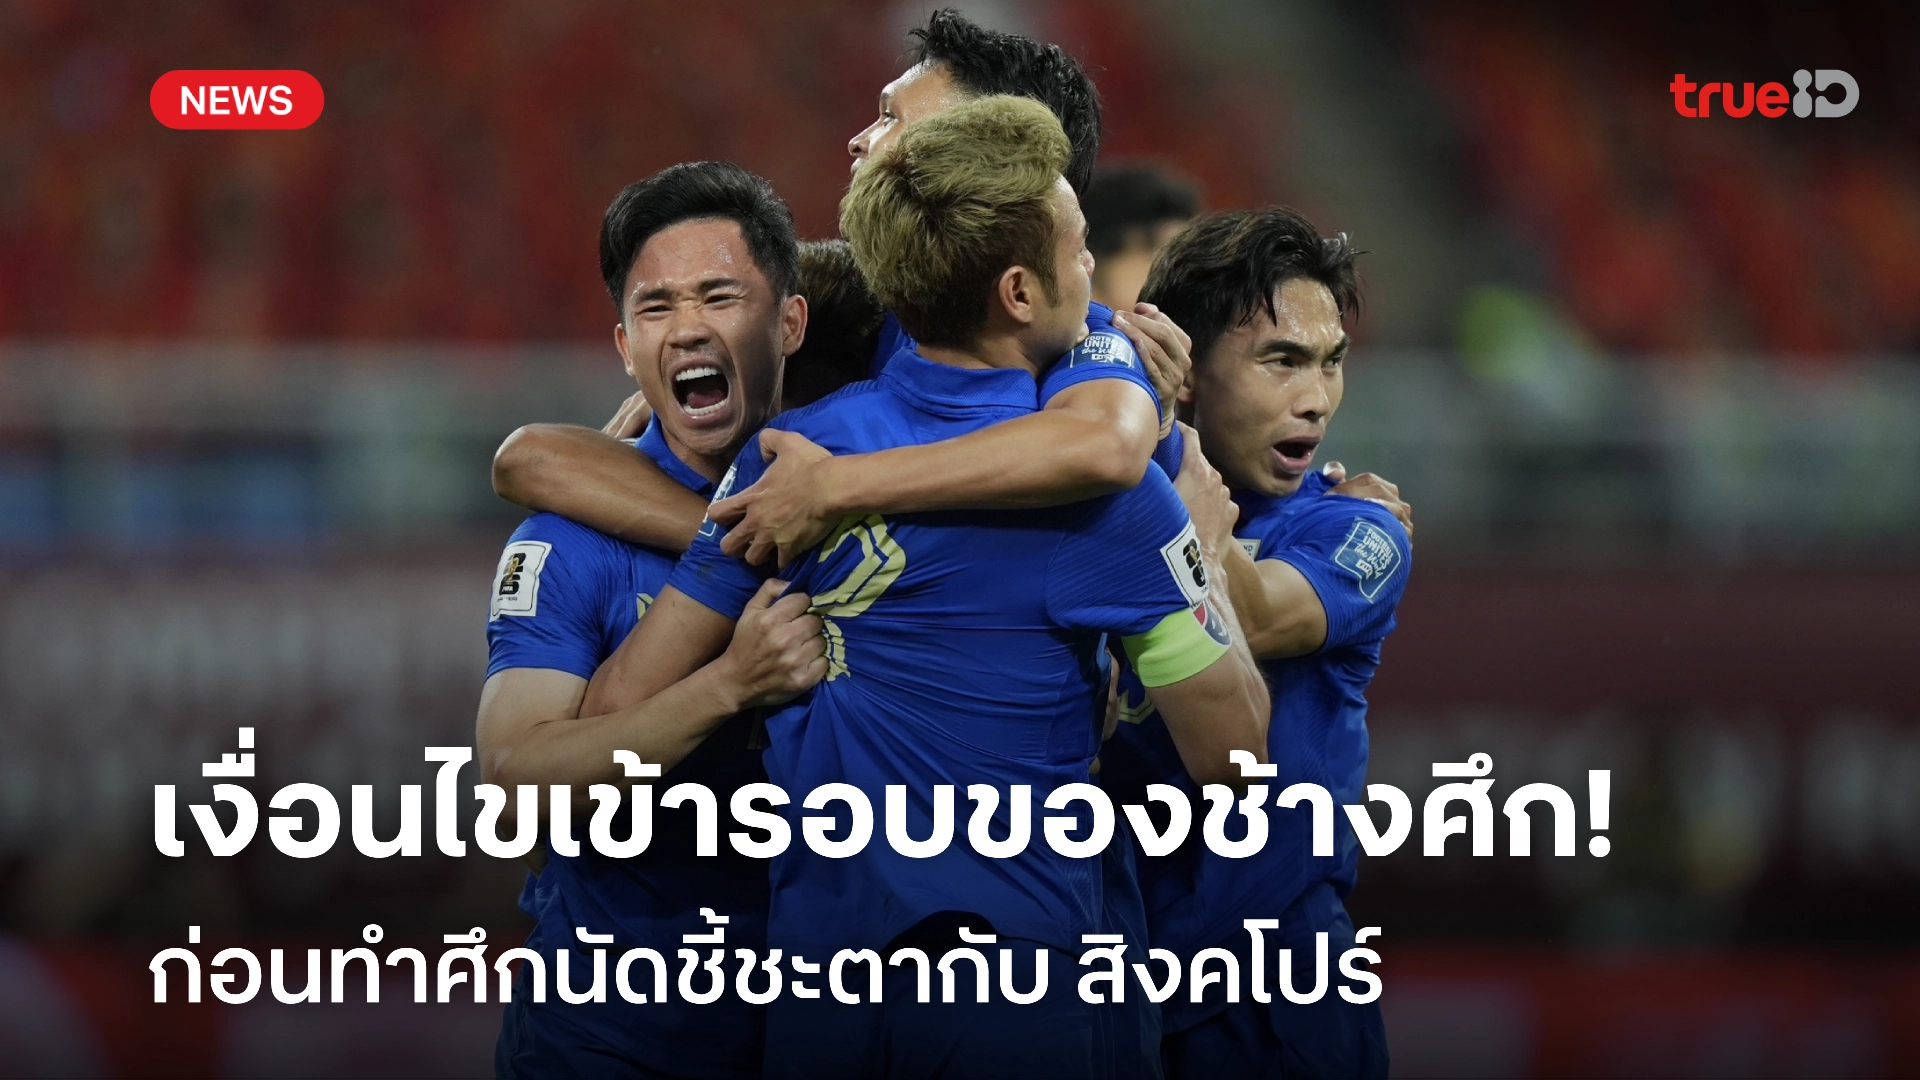 เปิดเงื่อนไขเข้ารอบคัดบอลโลก 2026 โซนเอเชีย รอบสาม ของ ทีมชาติไทย